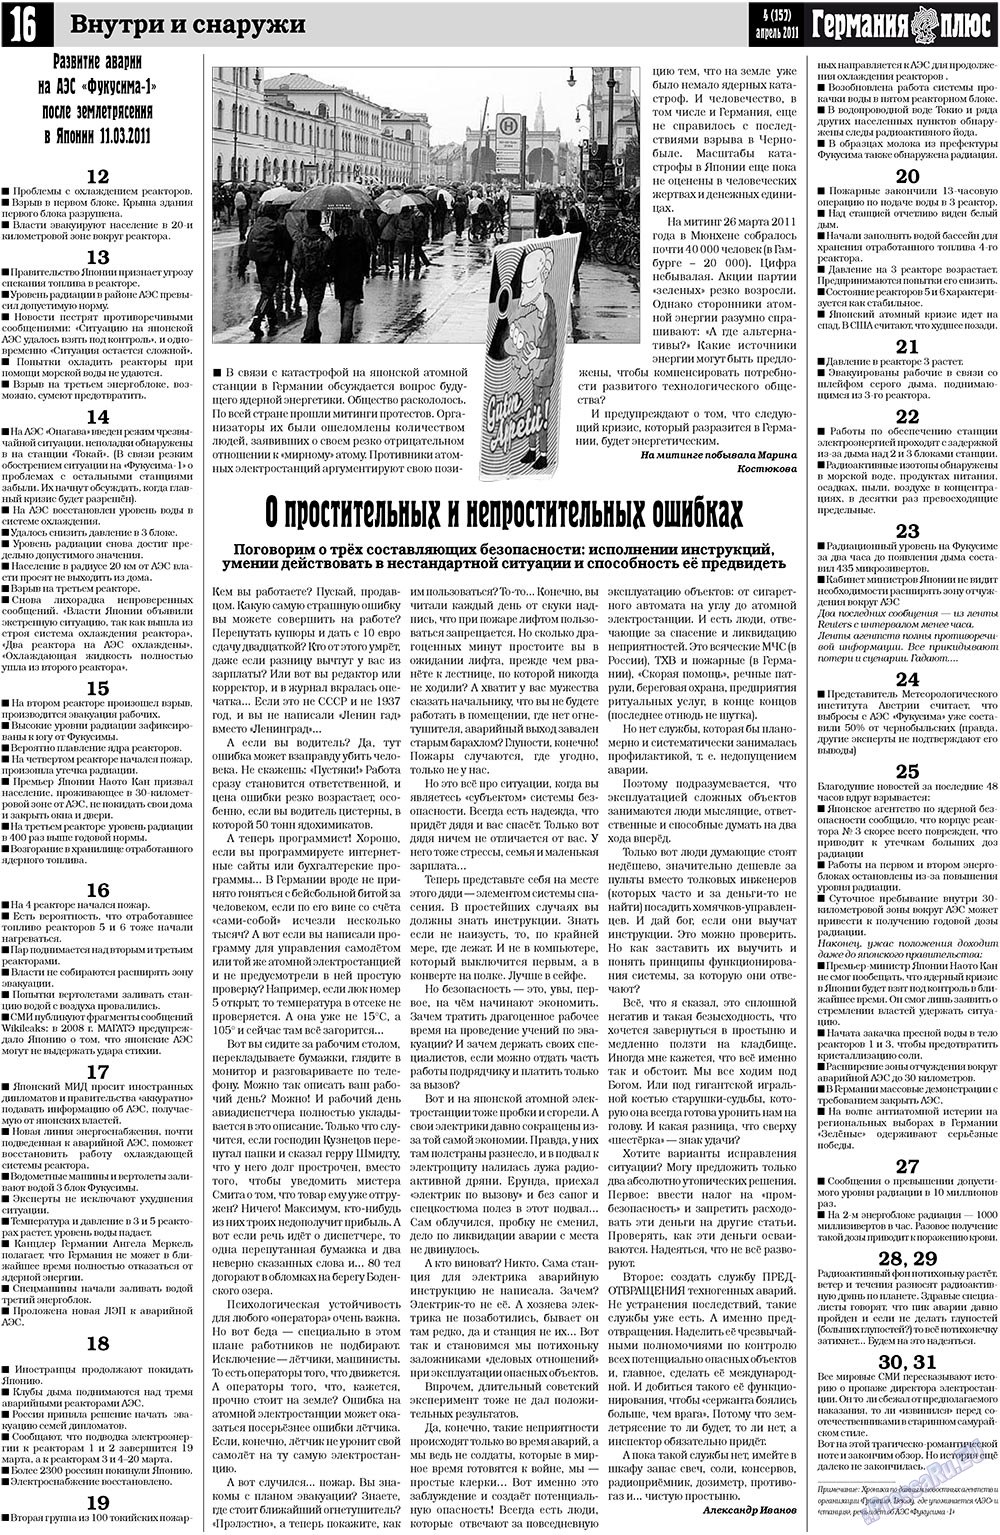 Германия плюс (газета). 2011 год, номер 4, стр. 16